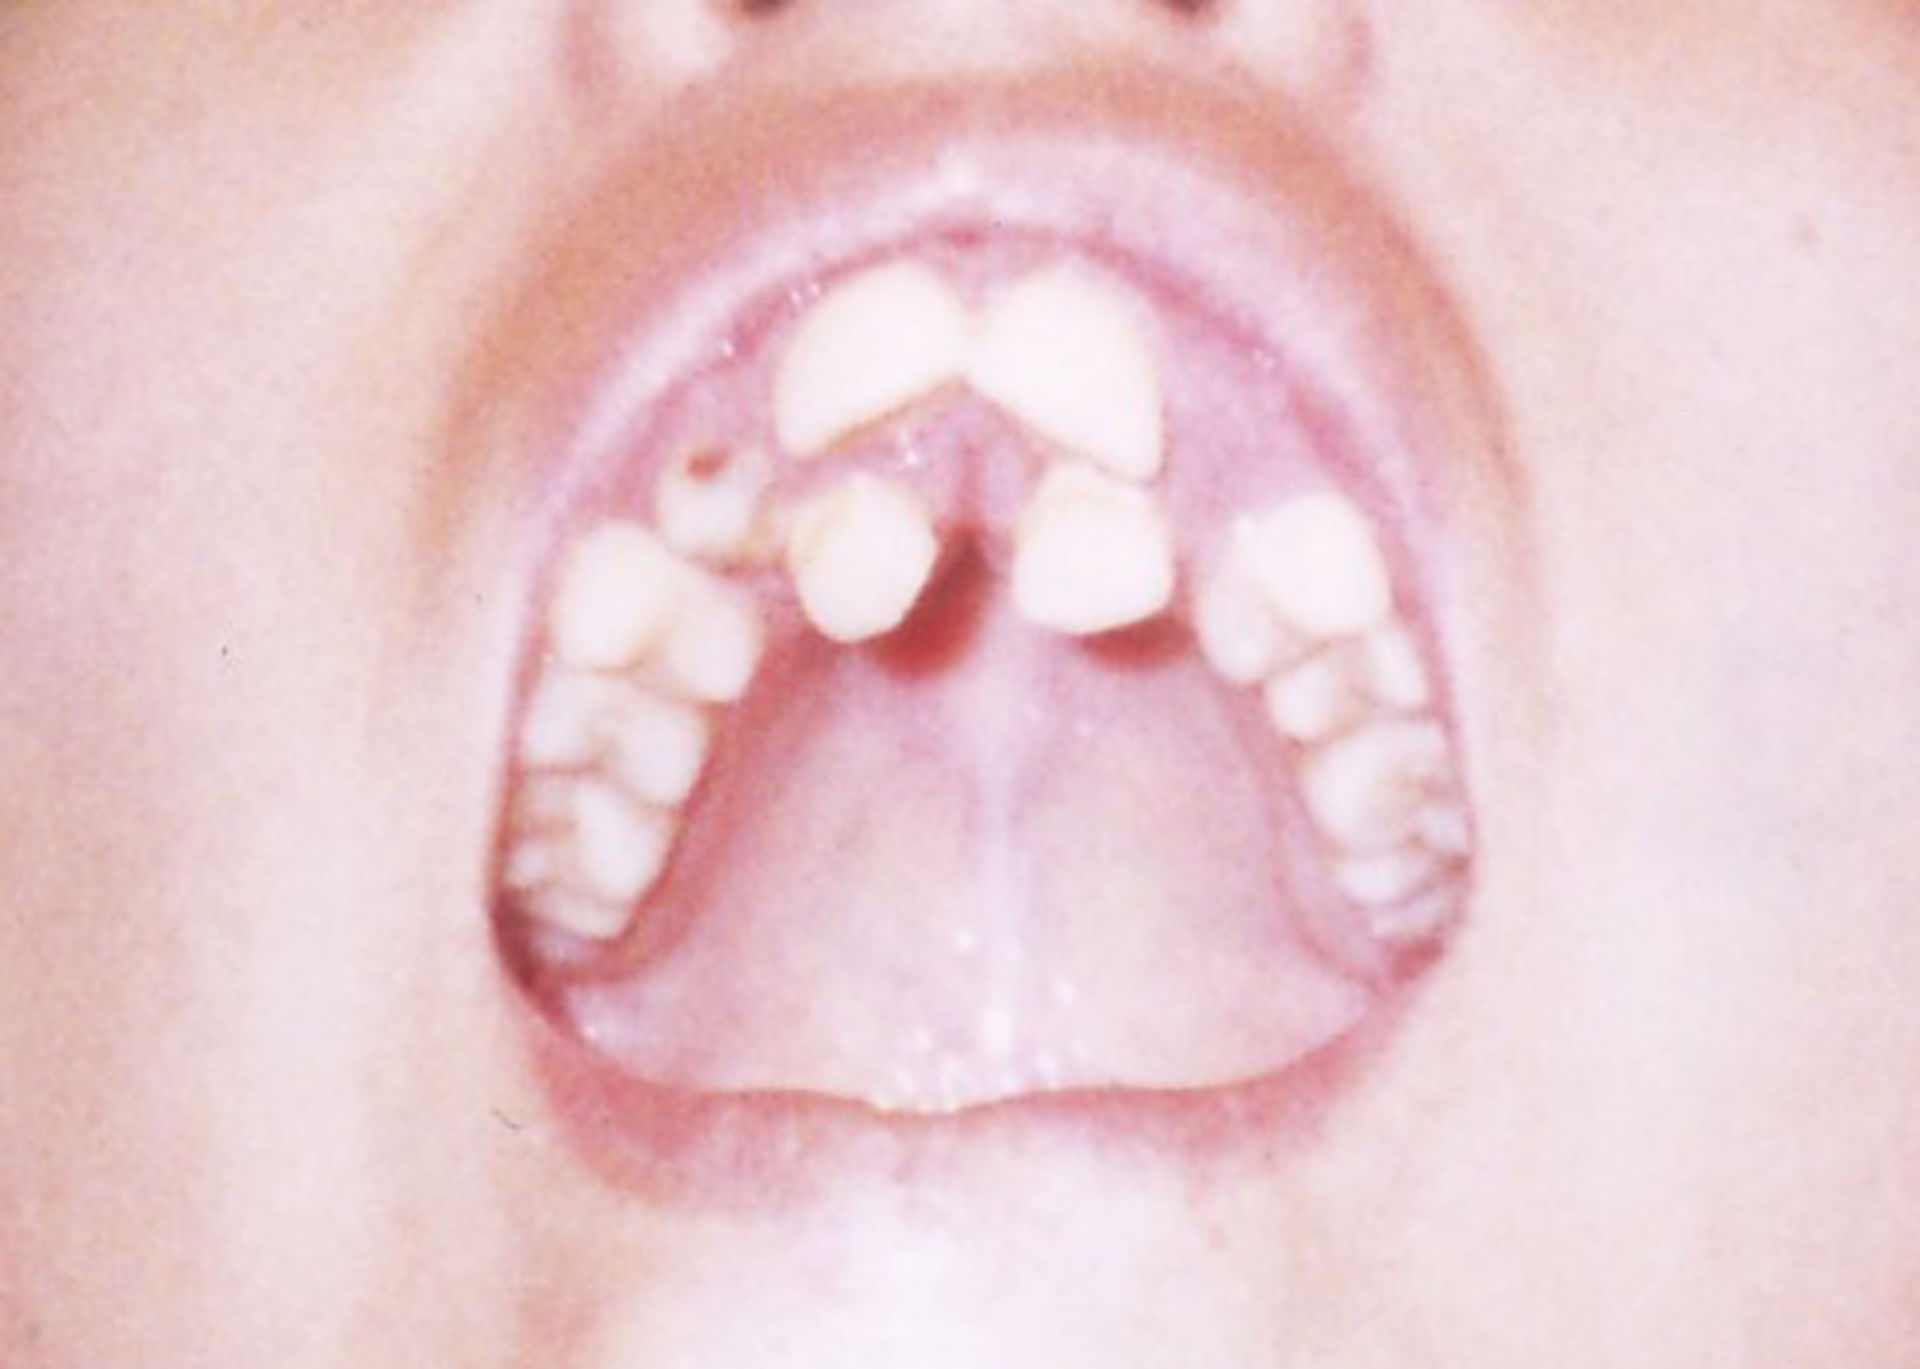 deformed teeth